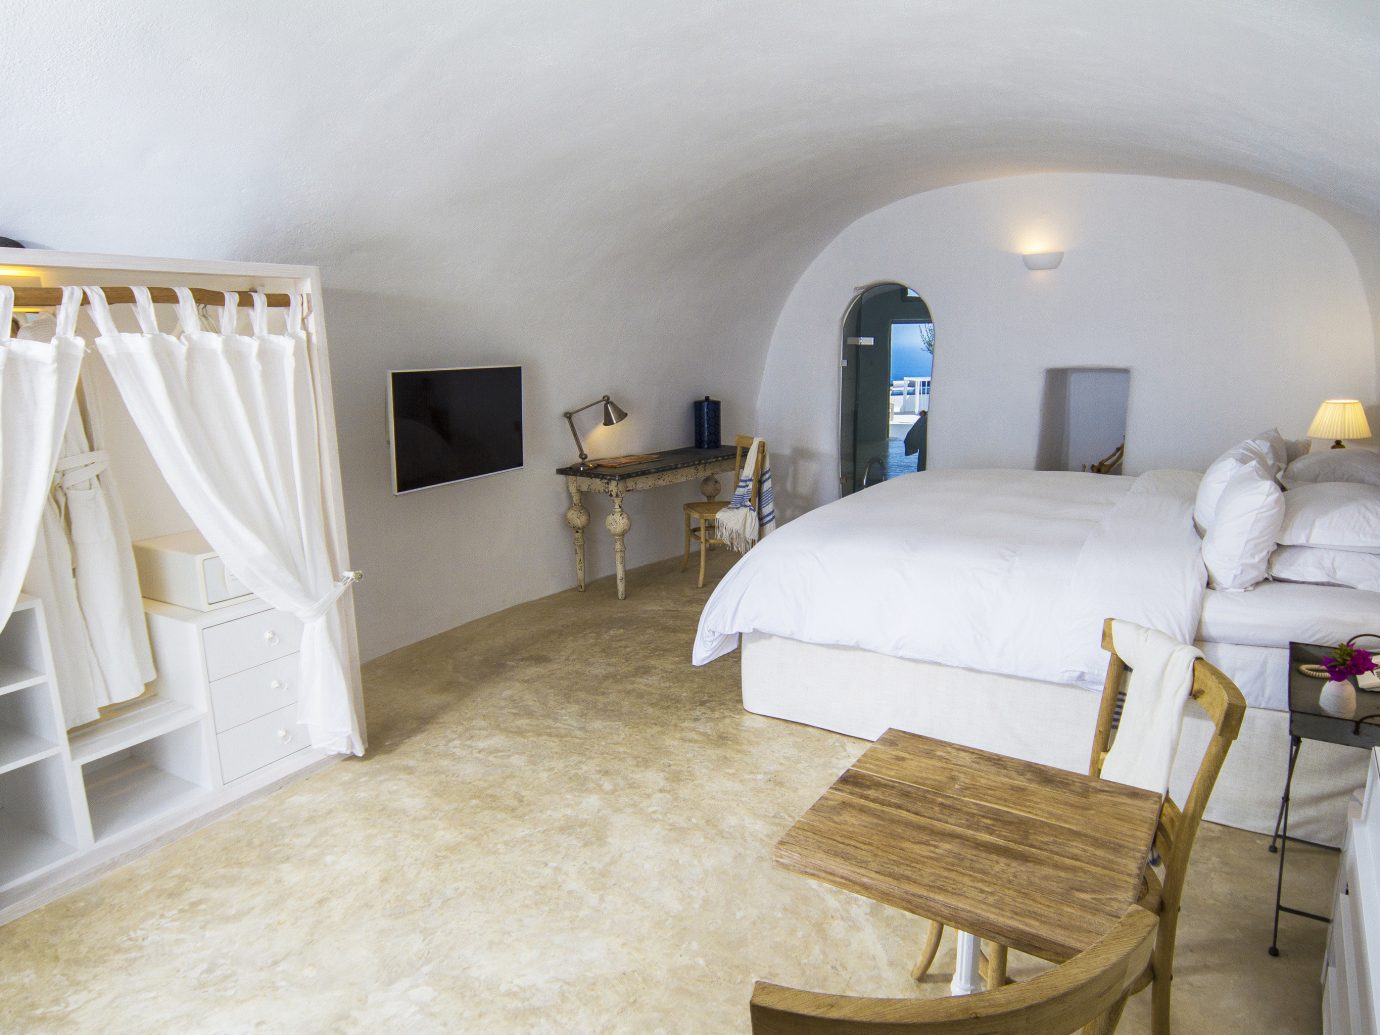 ギリシャホテルサントリーニ島屋内壁床部屋物件寝室スイートの家具ベッド不動産家のインテリアデザイン不動産ベッドフレーム天井製品